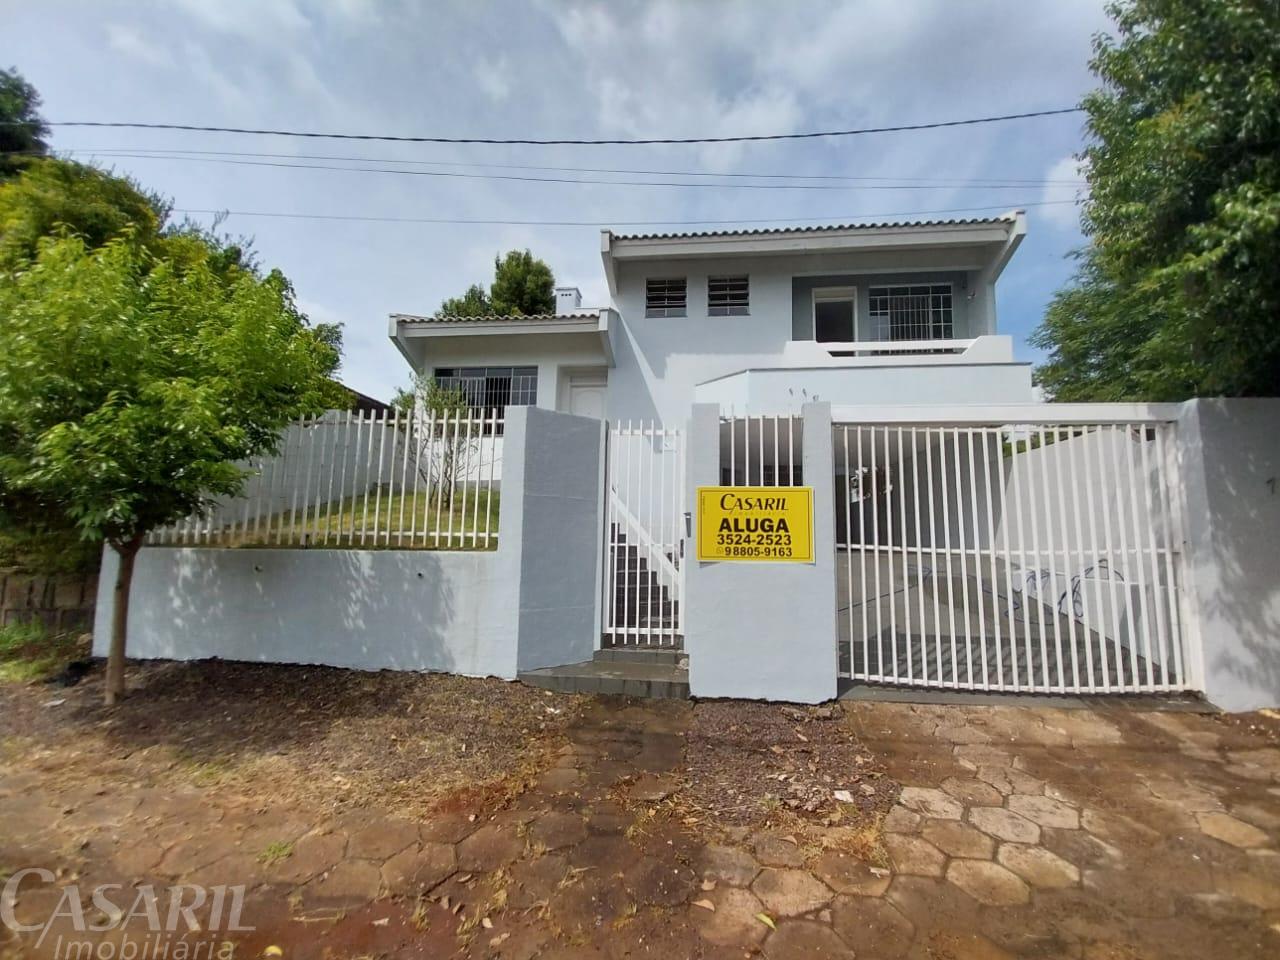 Casa Para Locação, Vila Nova, Francisco Beltrao - Pr